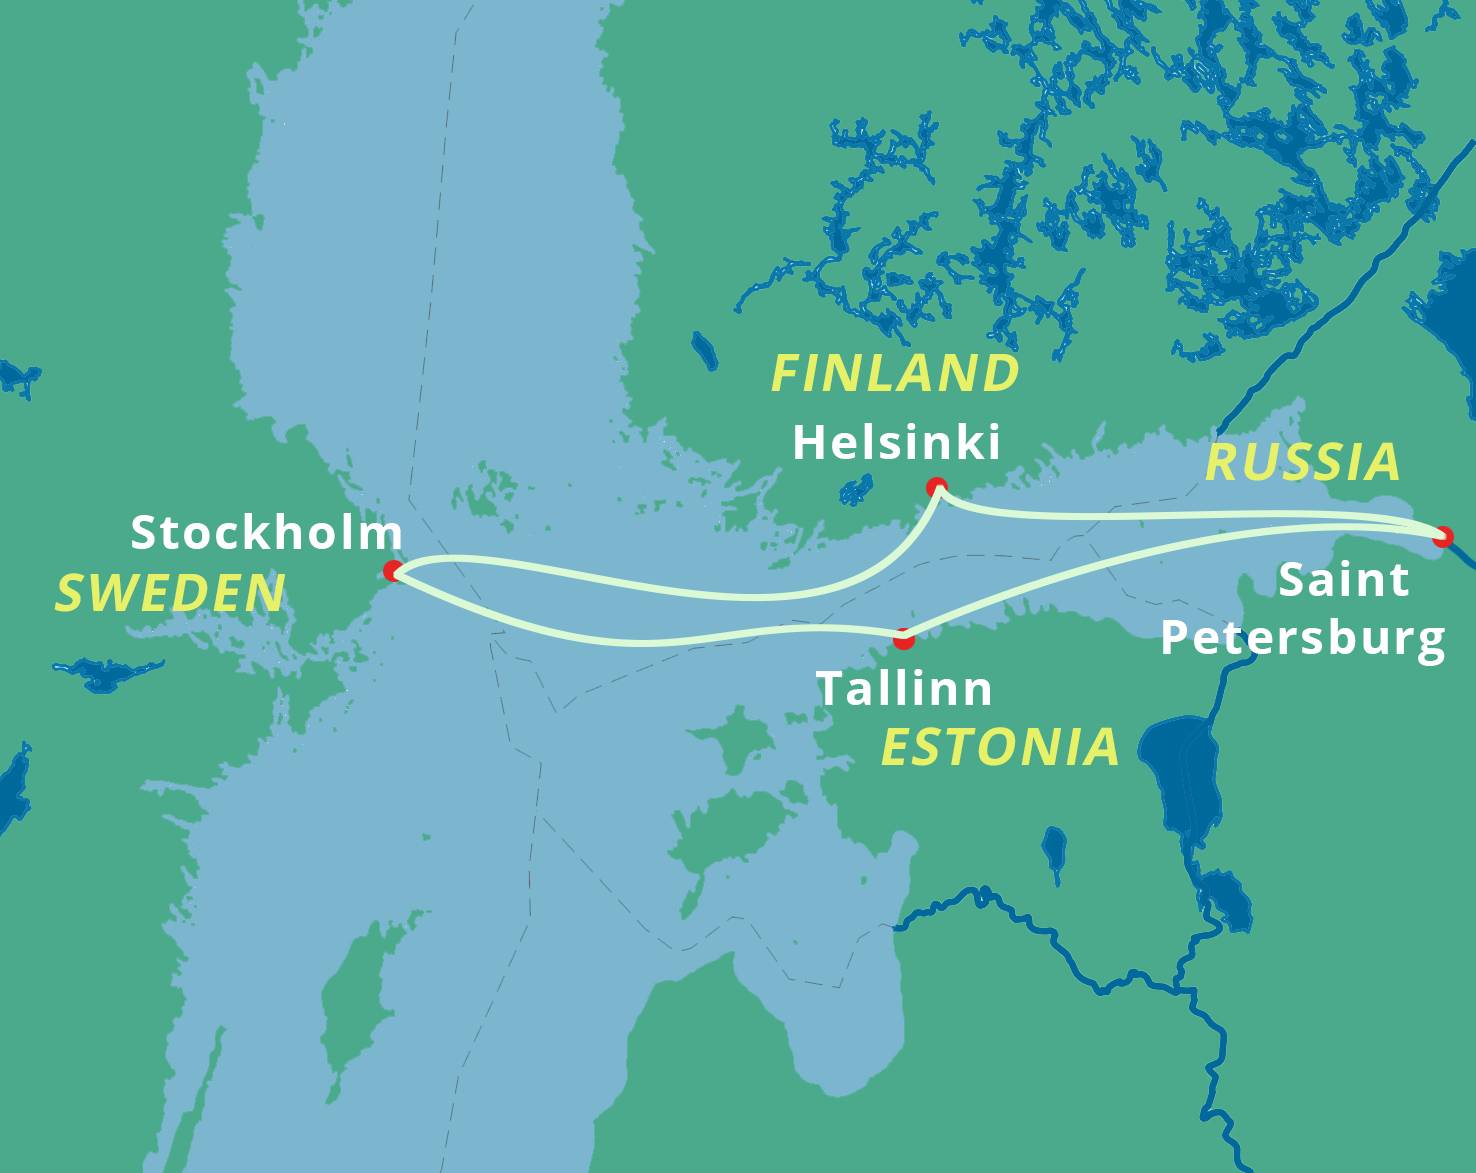 Морские круизы msc cruises из санкт-петербурга по скандинавии, круизы по средиземному морю, персидскому заливу, карибскому бассейну, юго-восточной азии 2022-2023